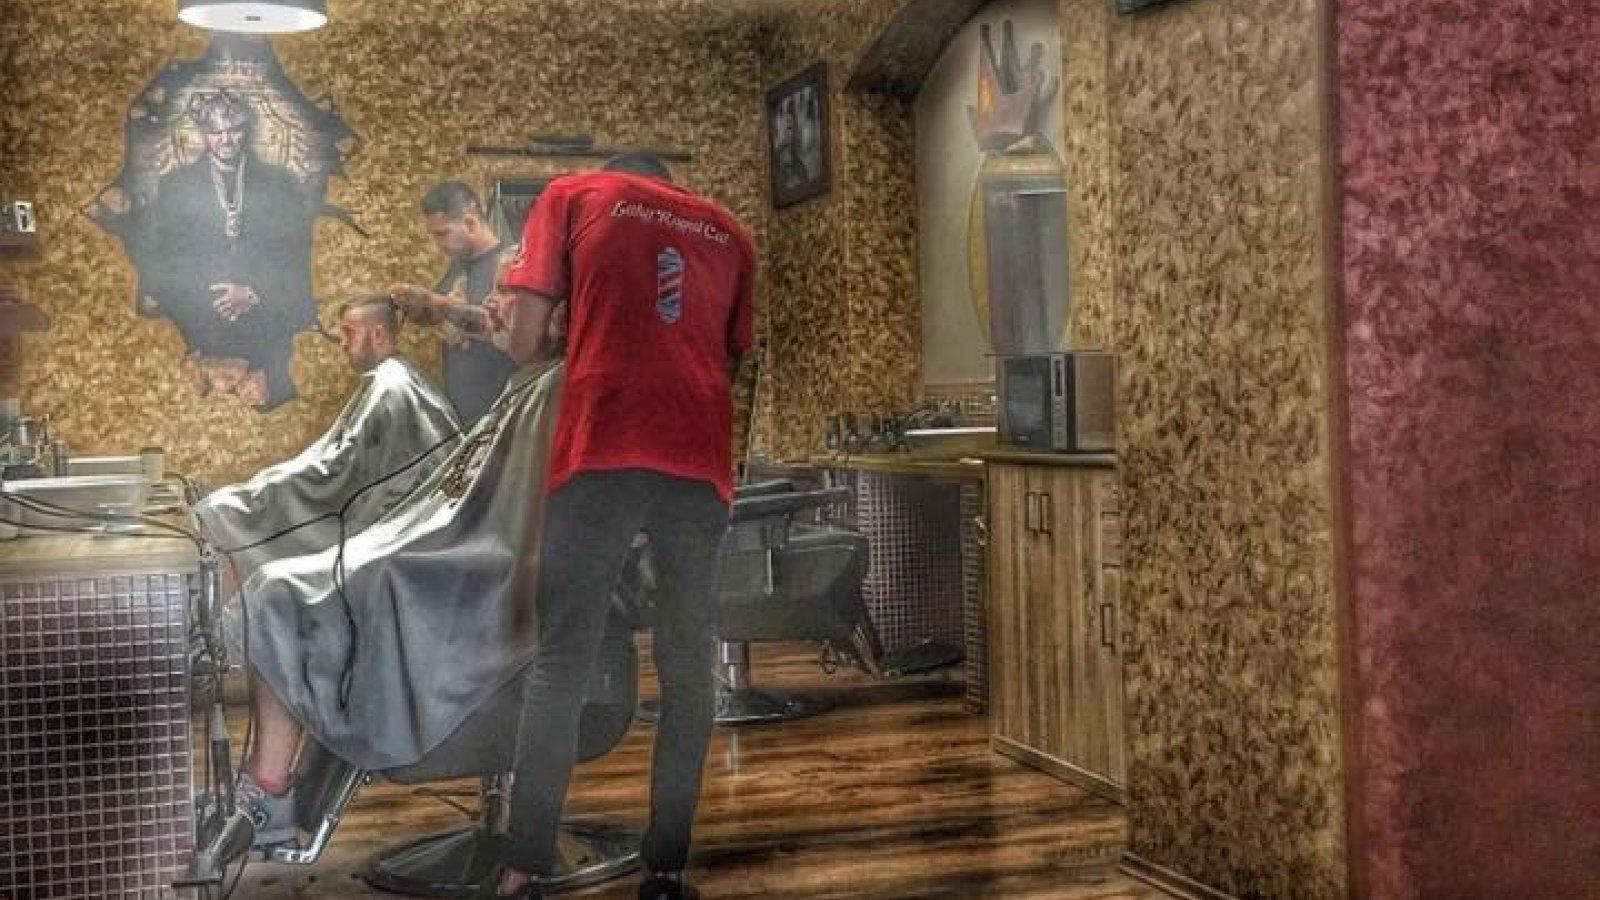 Royal Cut Barbershop